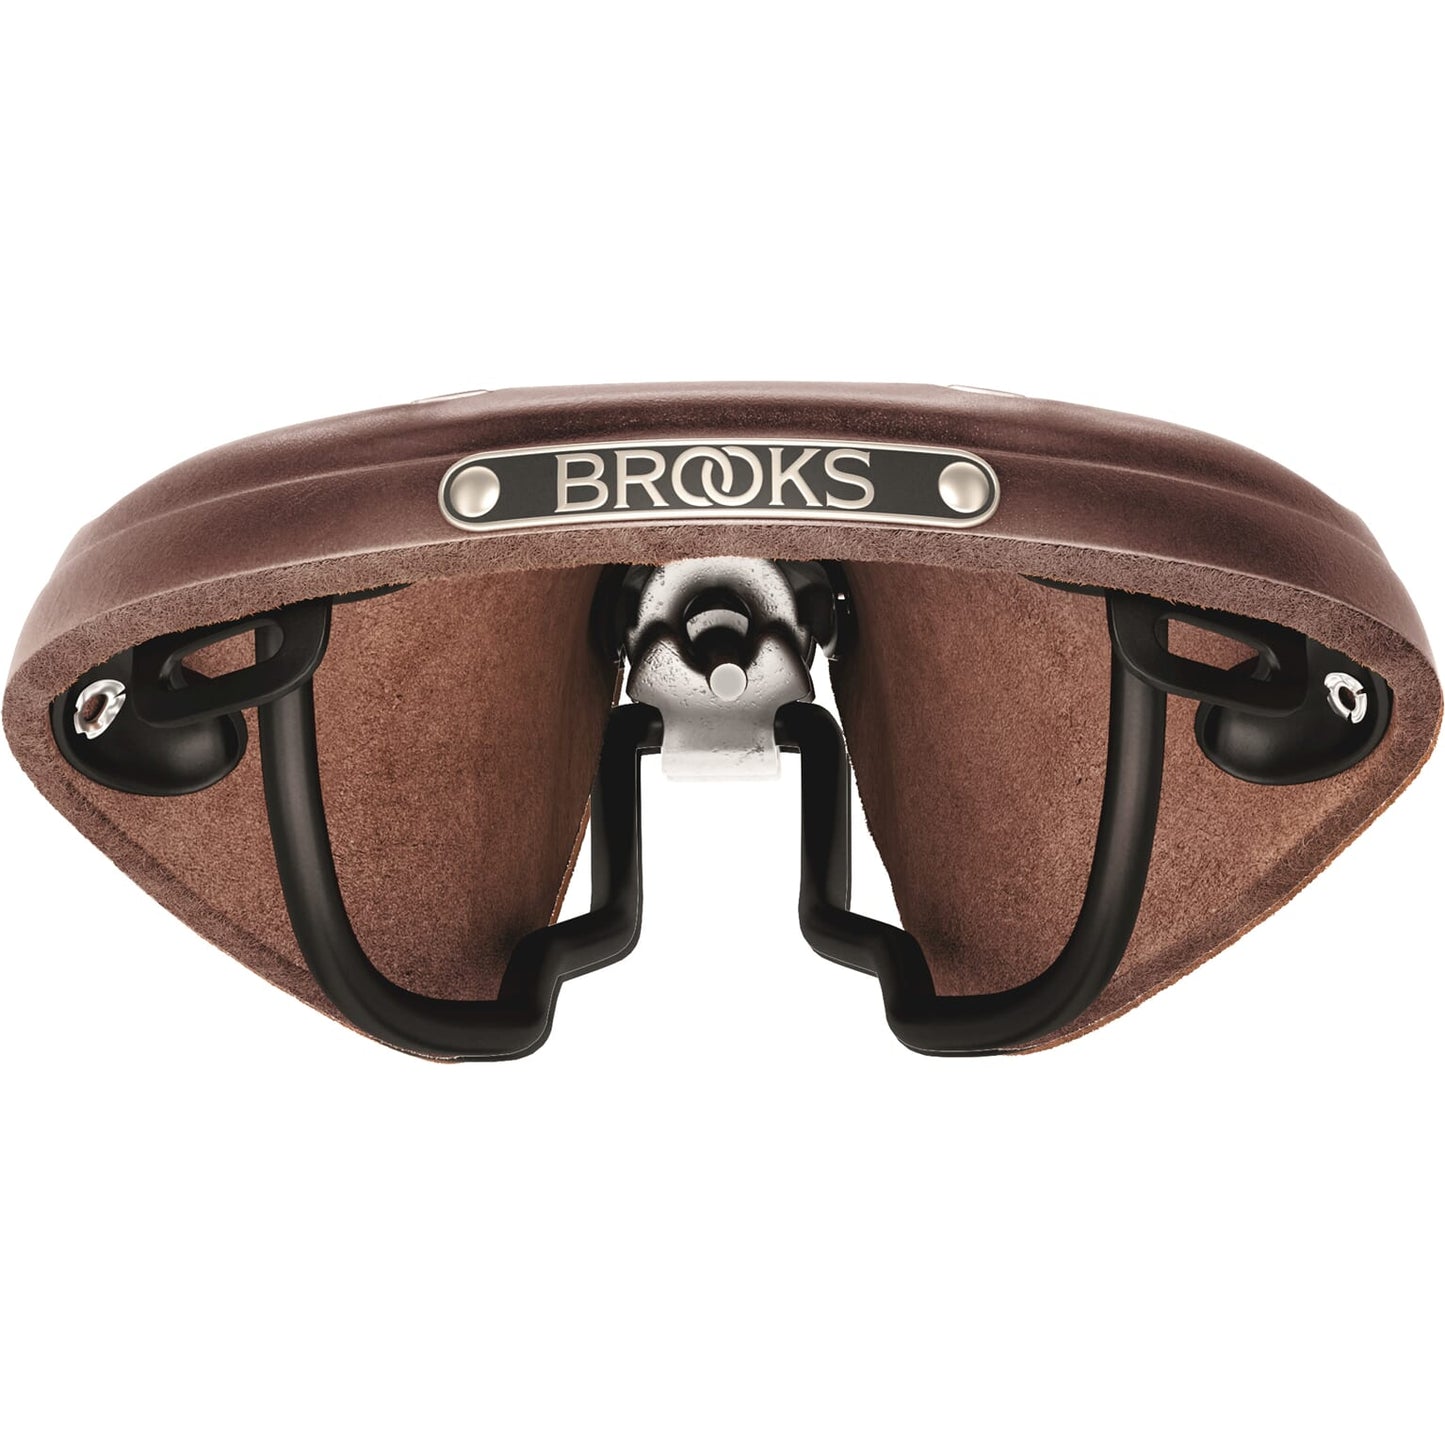 Brooks Saddle B17 estrecho marrón